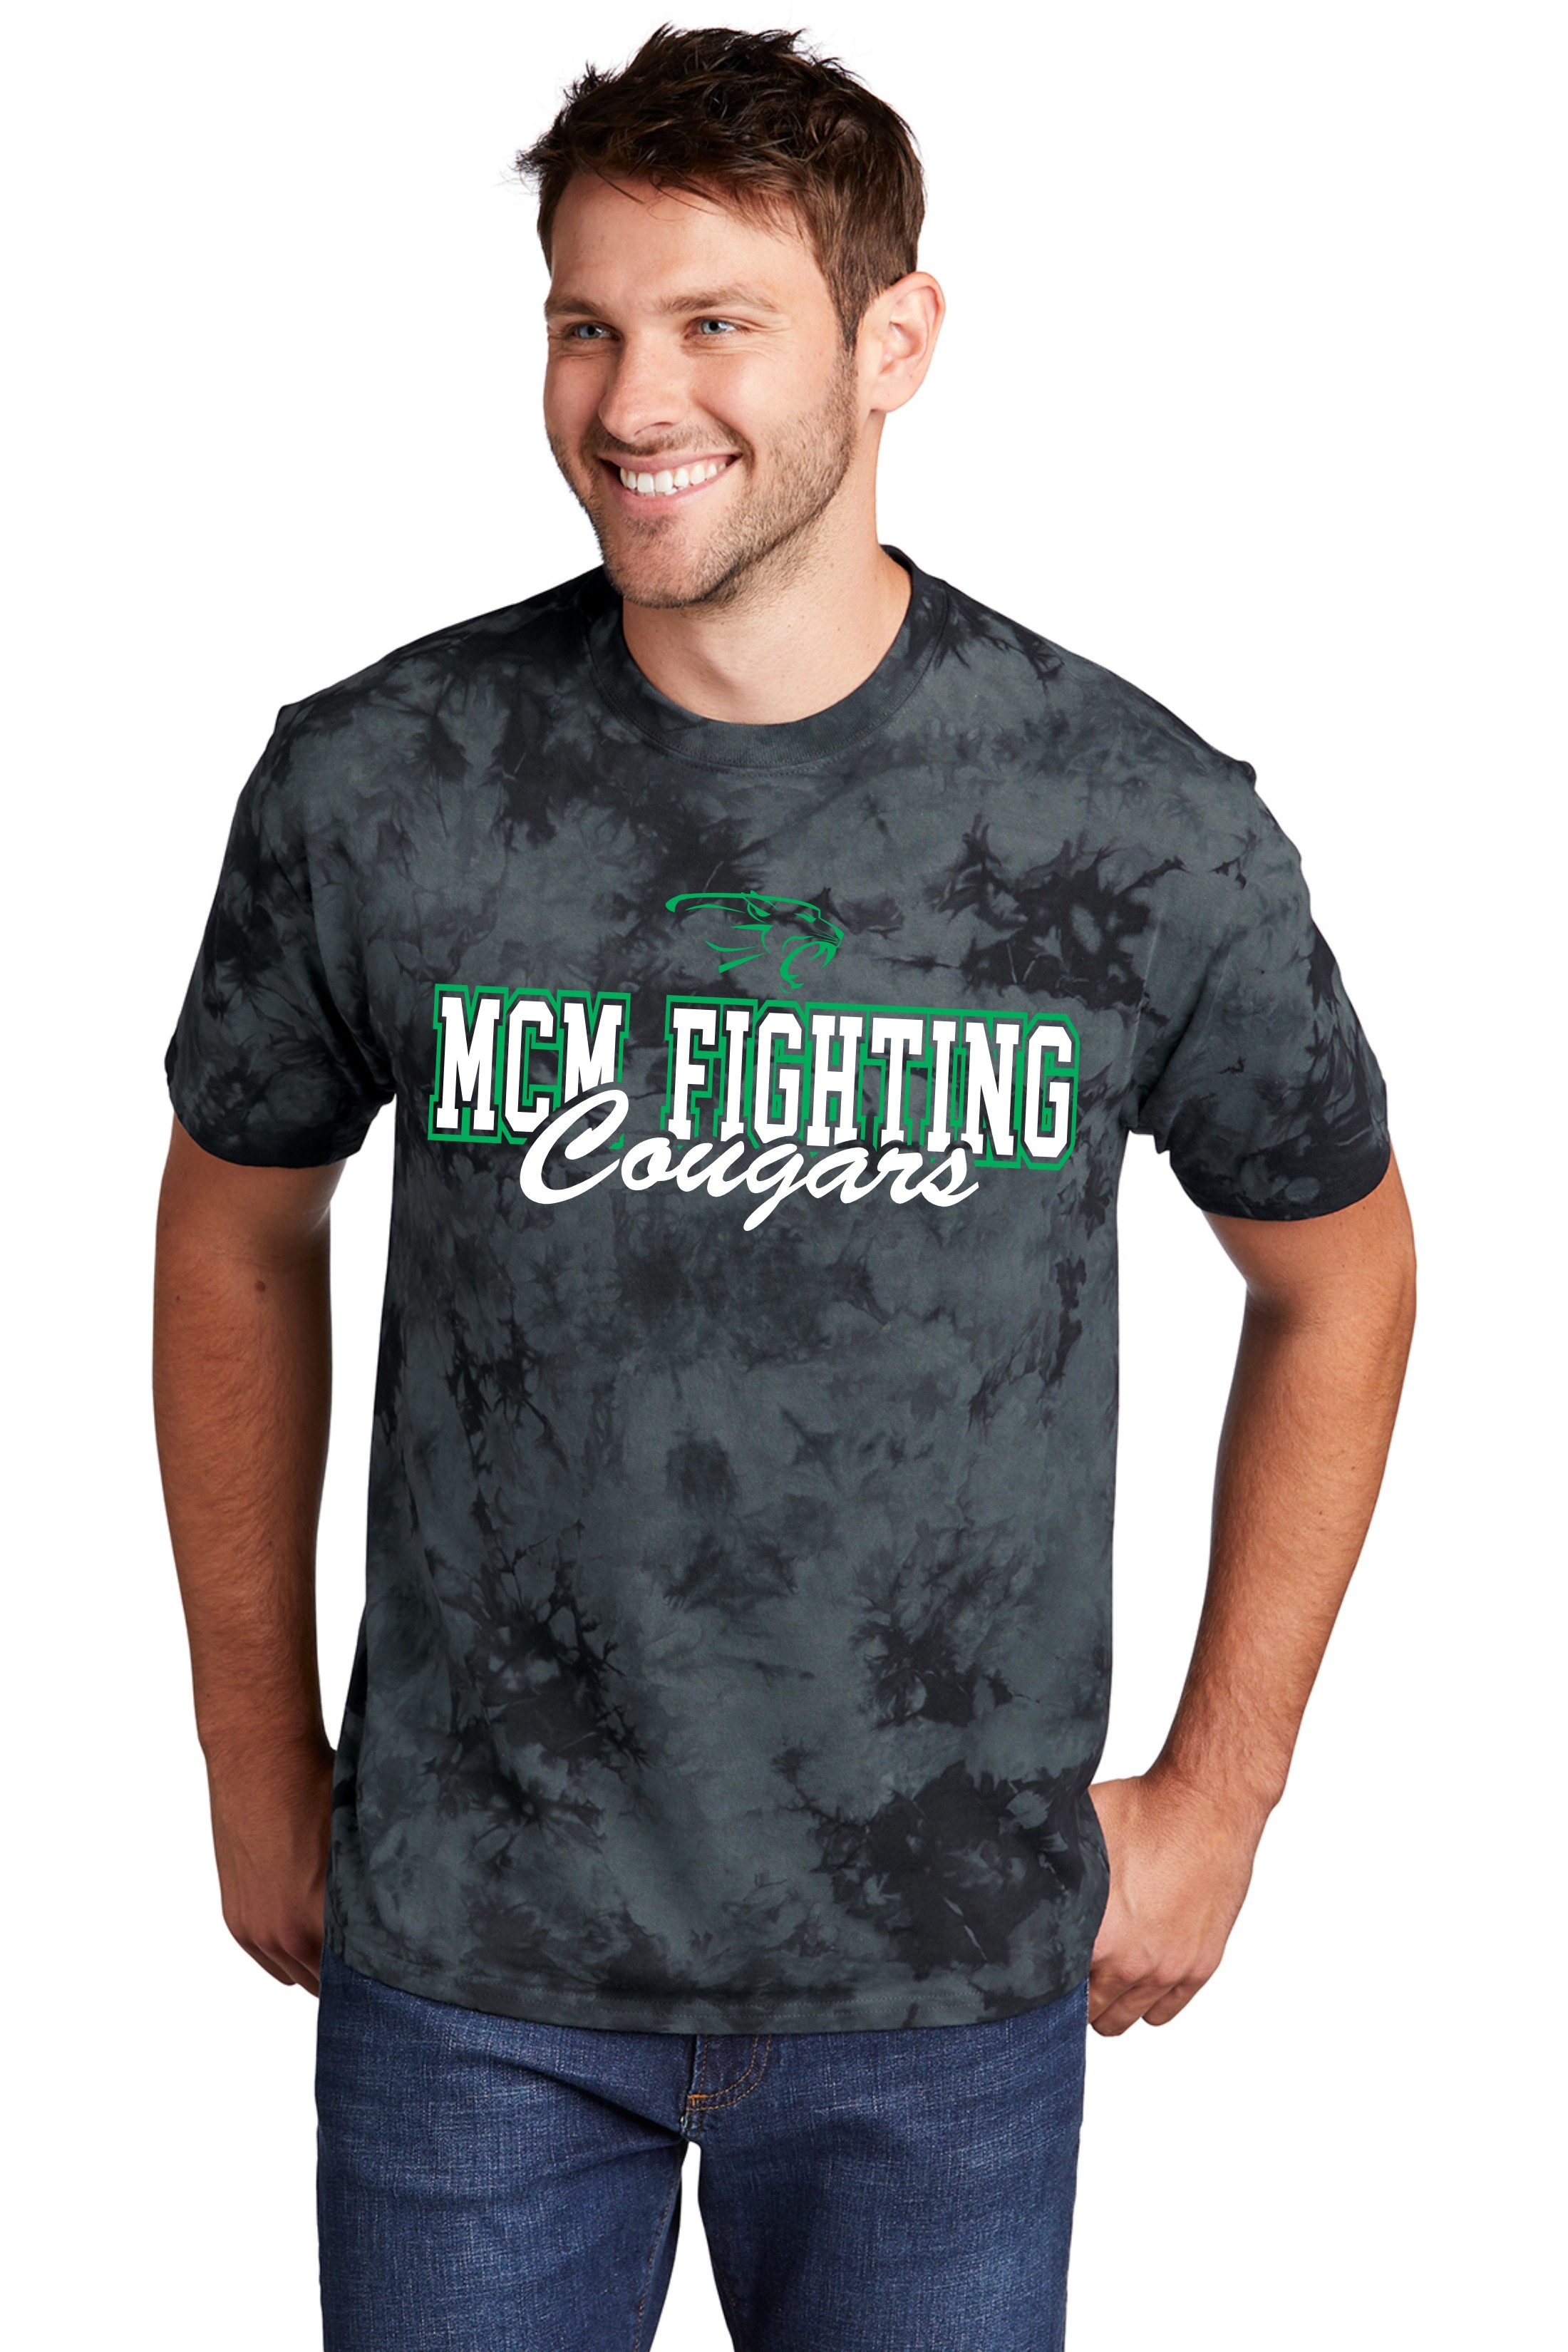 MCM Fighting Cougars Tie-Dye Tee